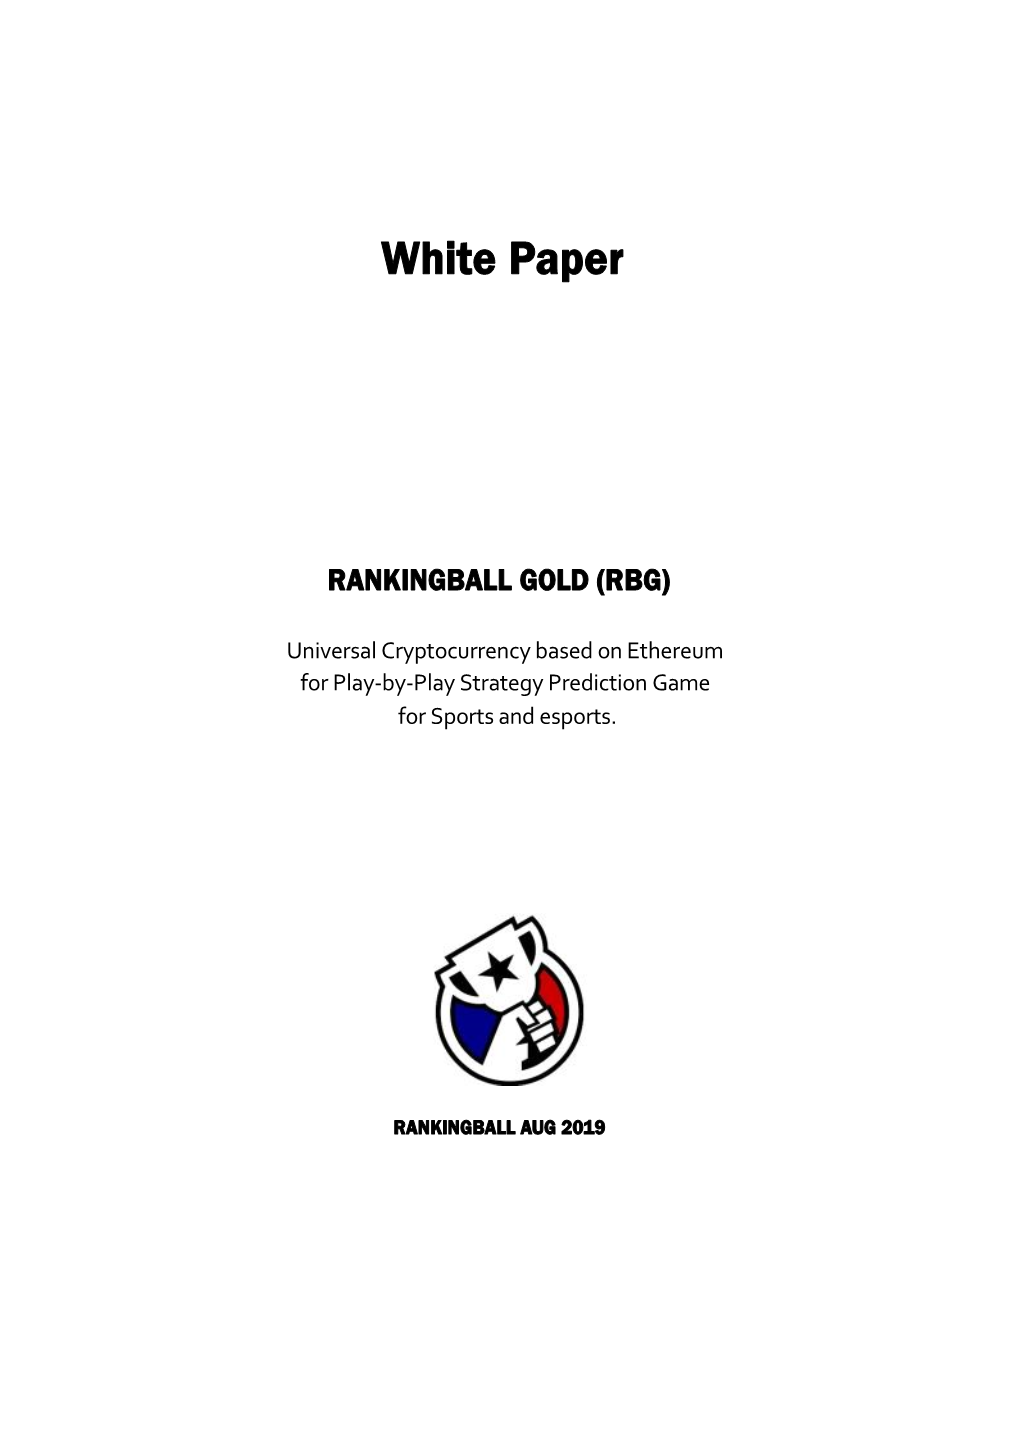 Rankinball Gold Whitepaper